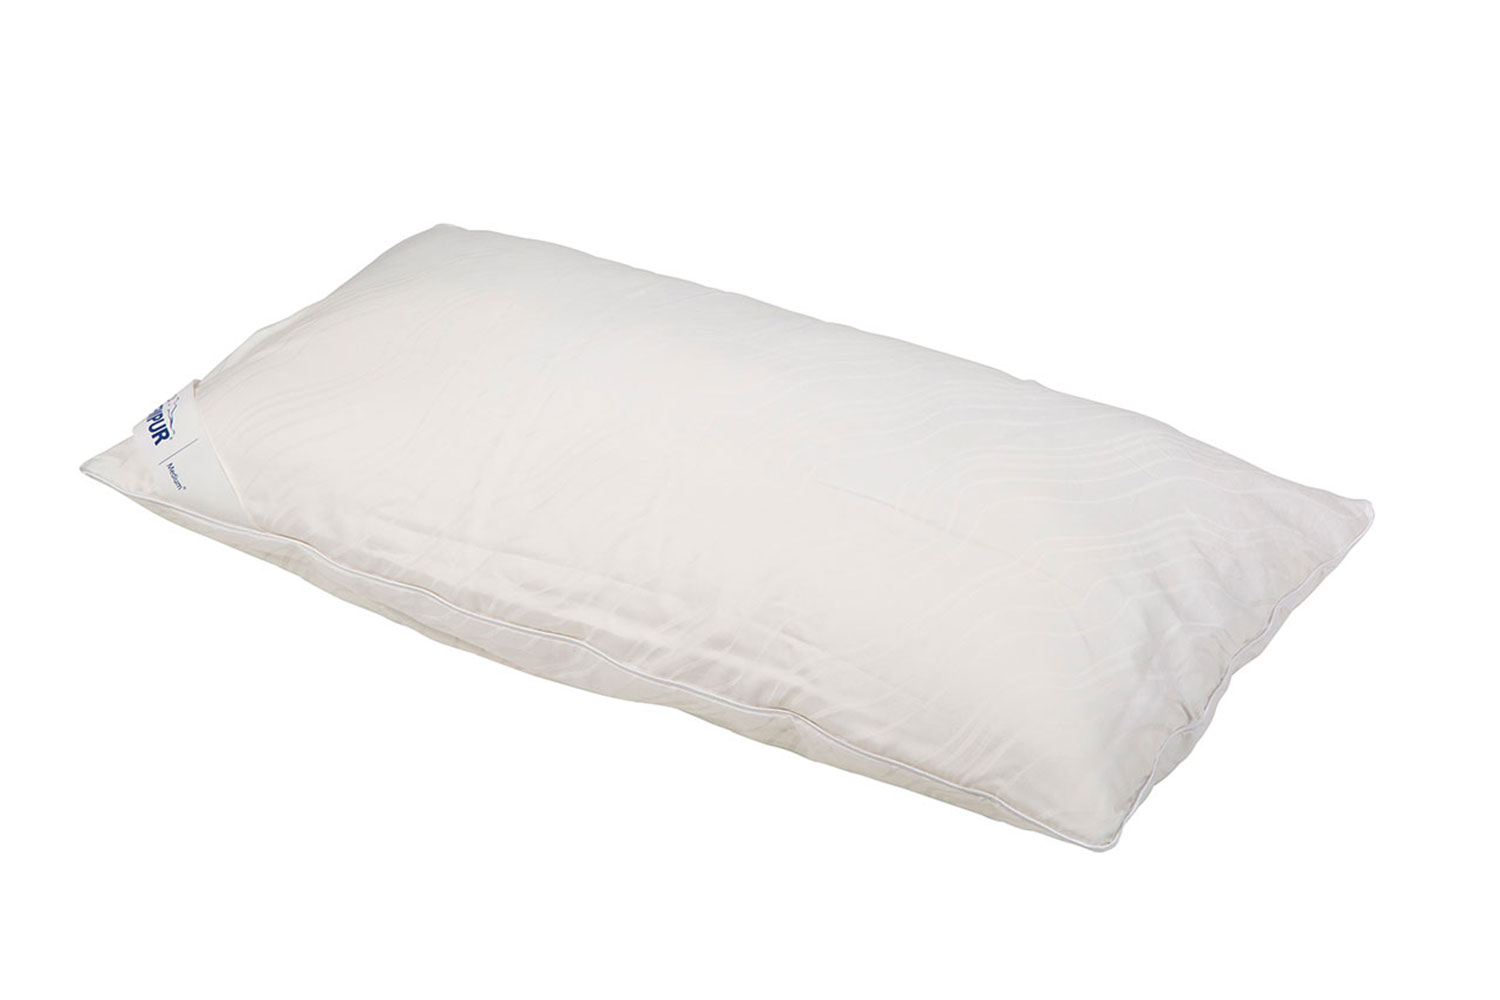 body pillow auckland